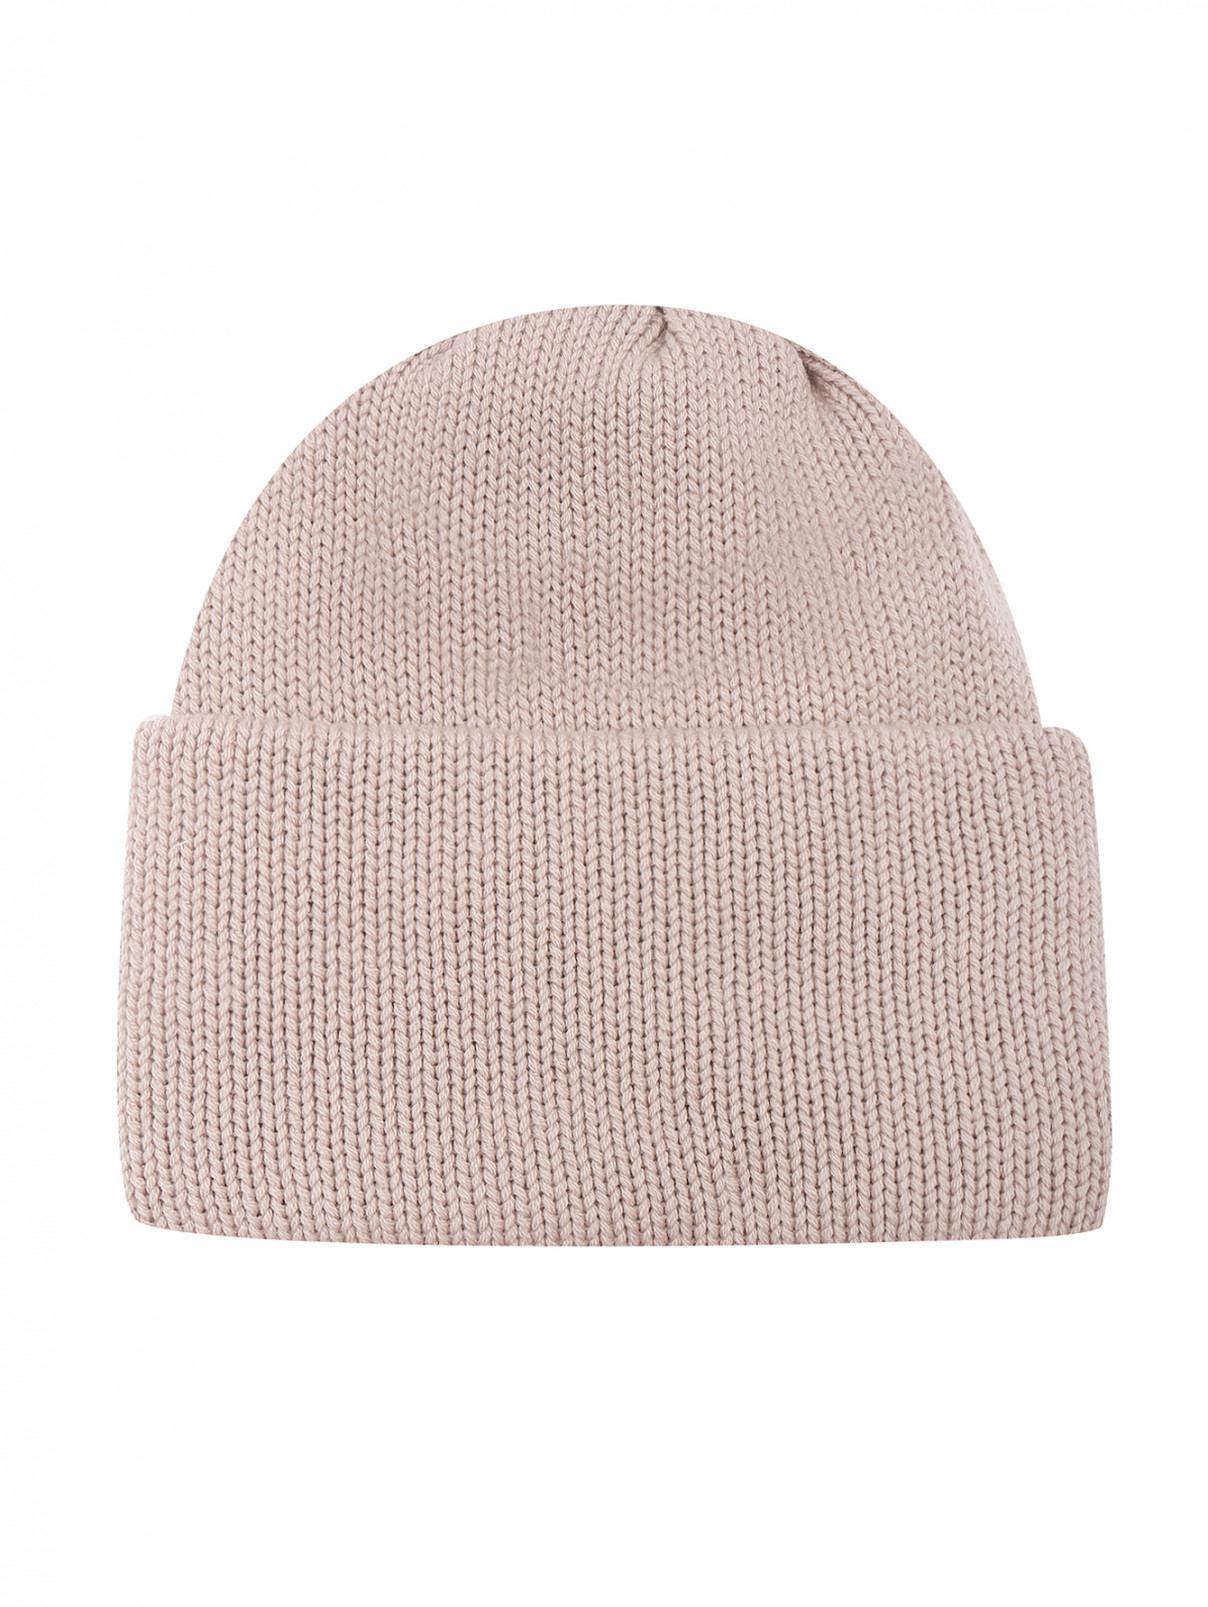 Объемная шапка из кашемира Malo  –  Общий вид  – Цвет:  Бежевый